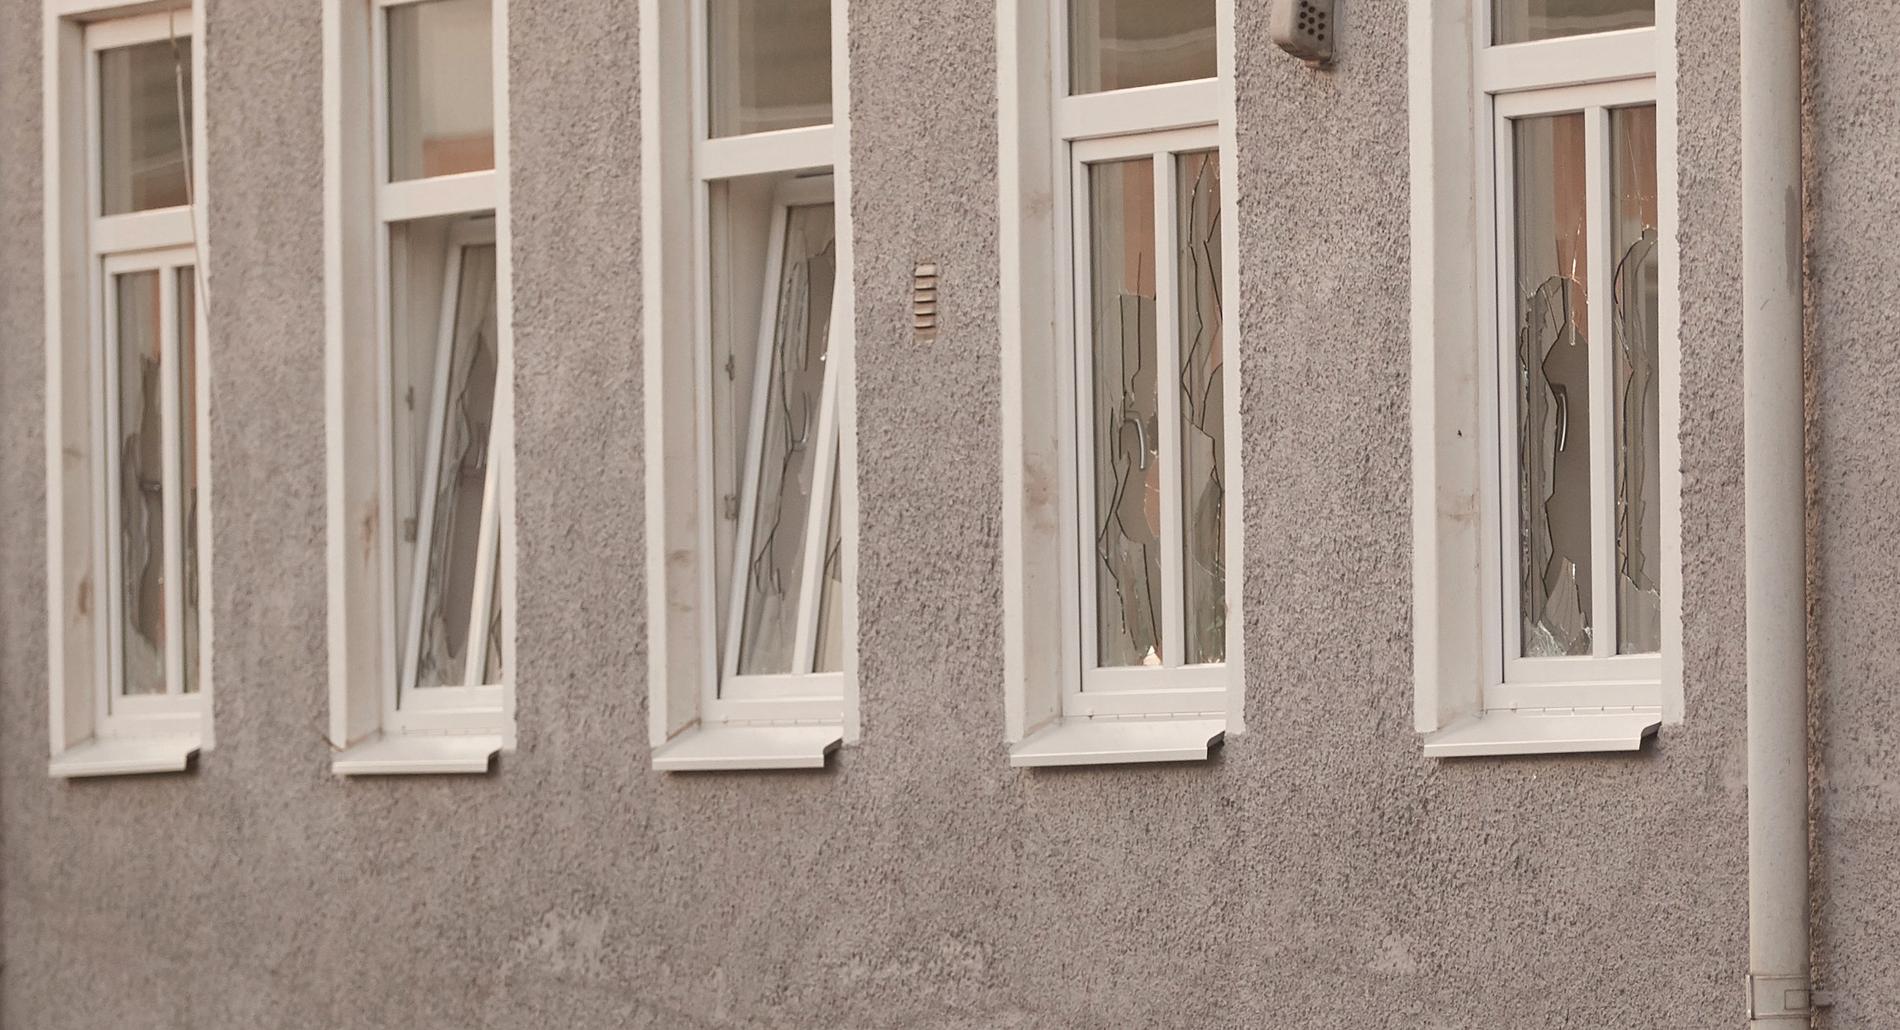 Flera personer blev knivskurna och fönster krossades på orten utanför Trelleborg tidigare i veckan. Arkivbild.